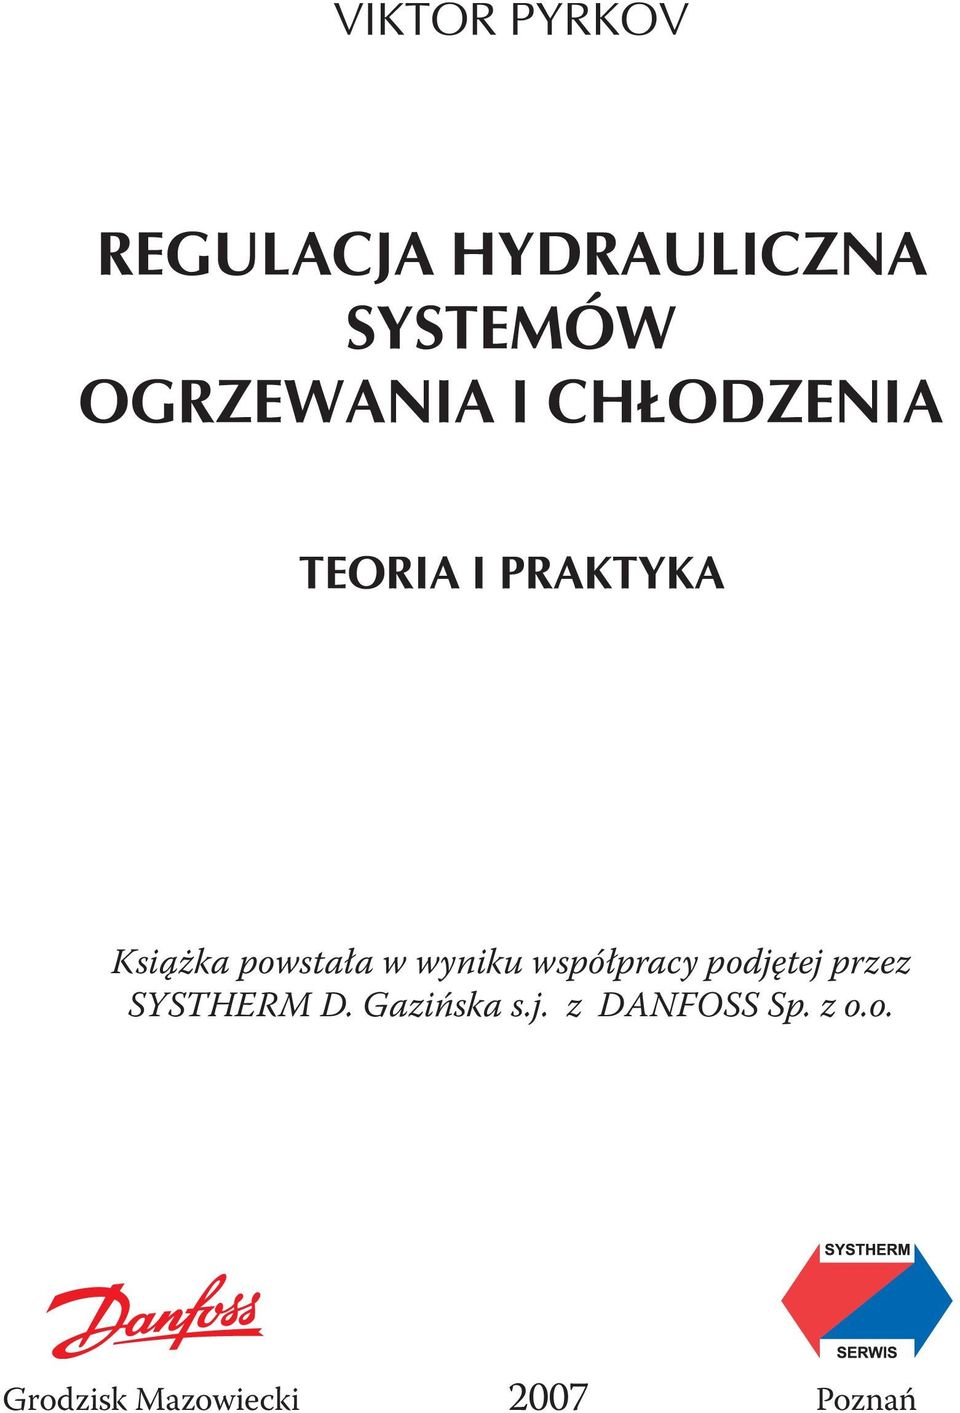 SYSTHERM D. Gazińska s.j.